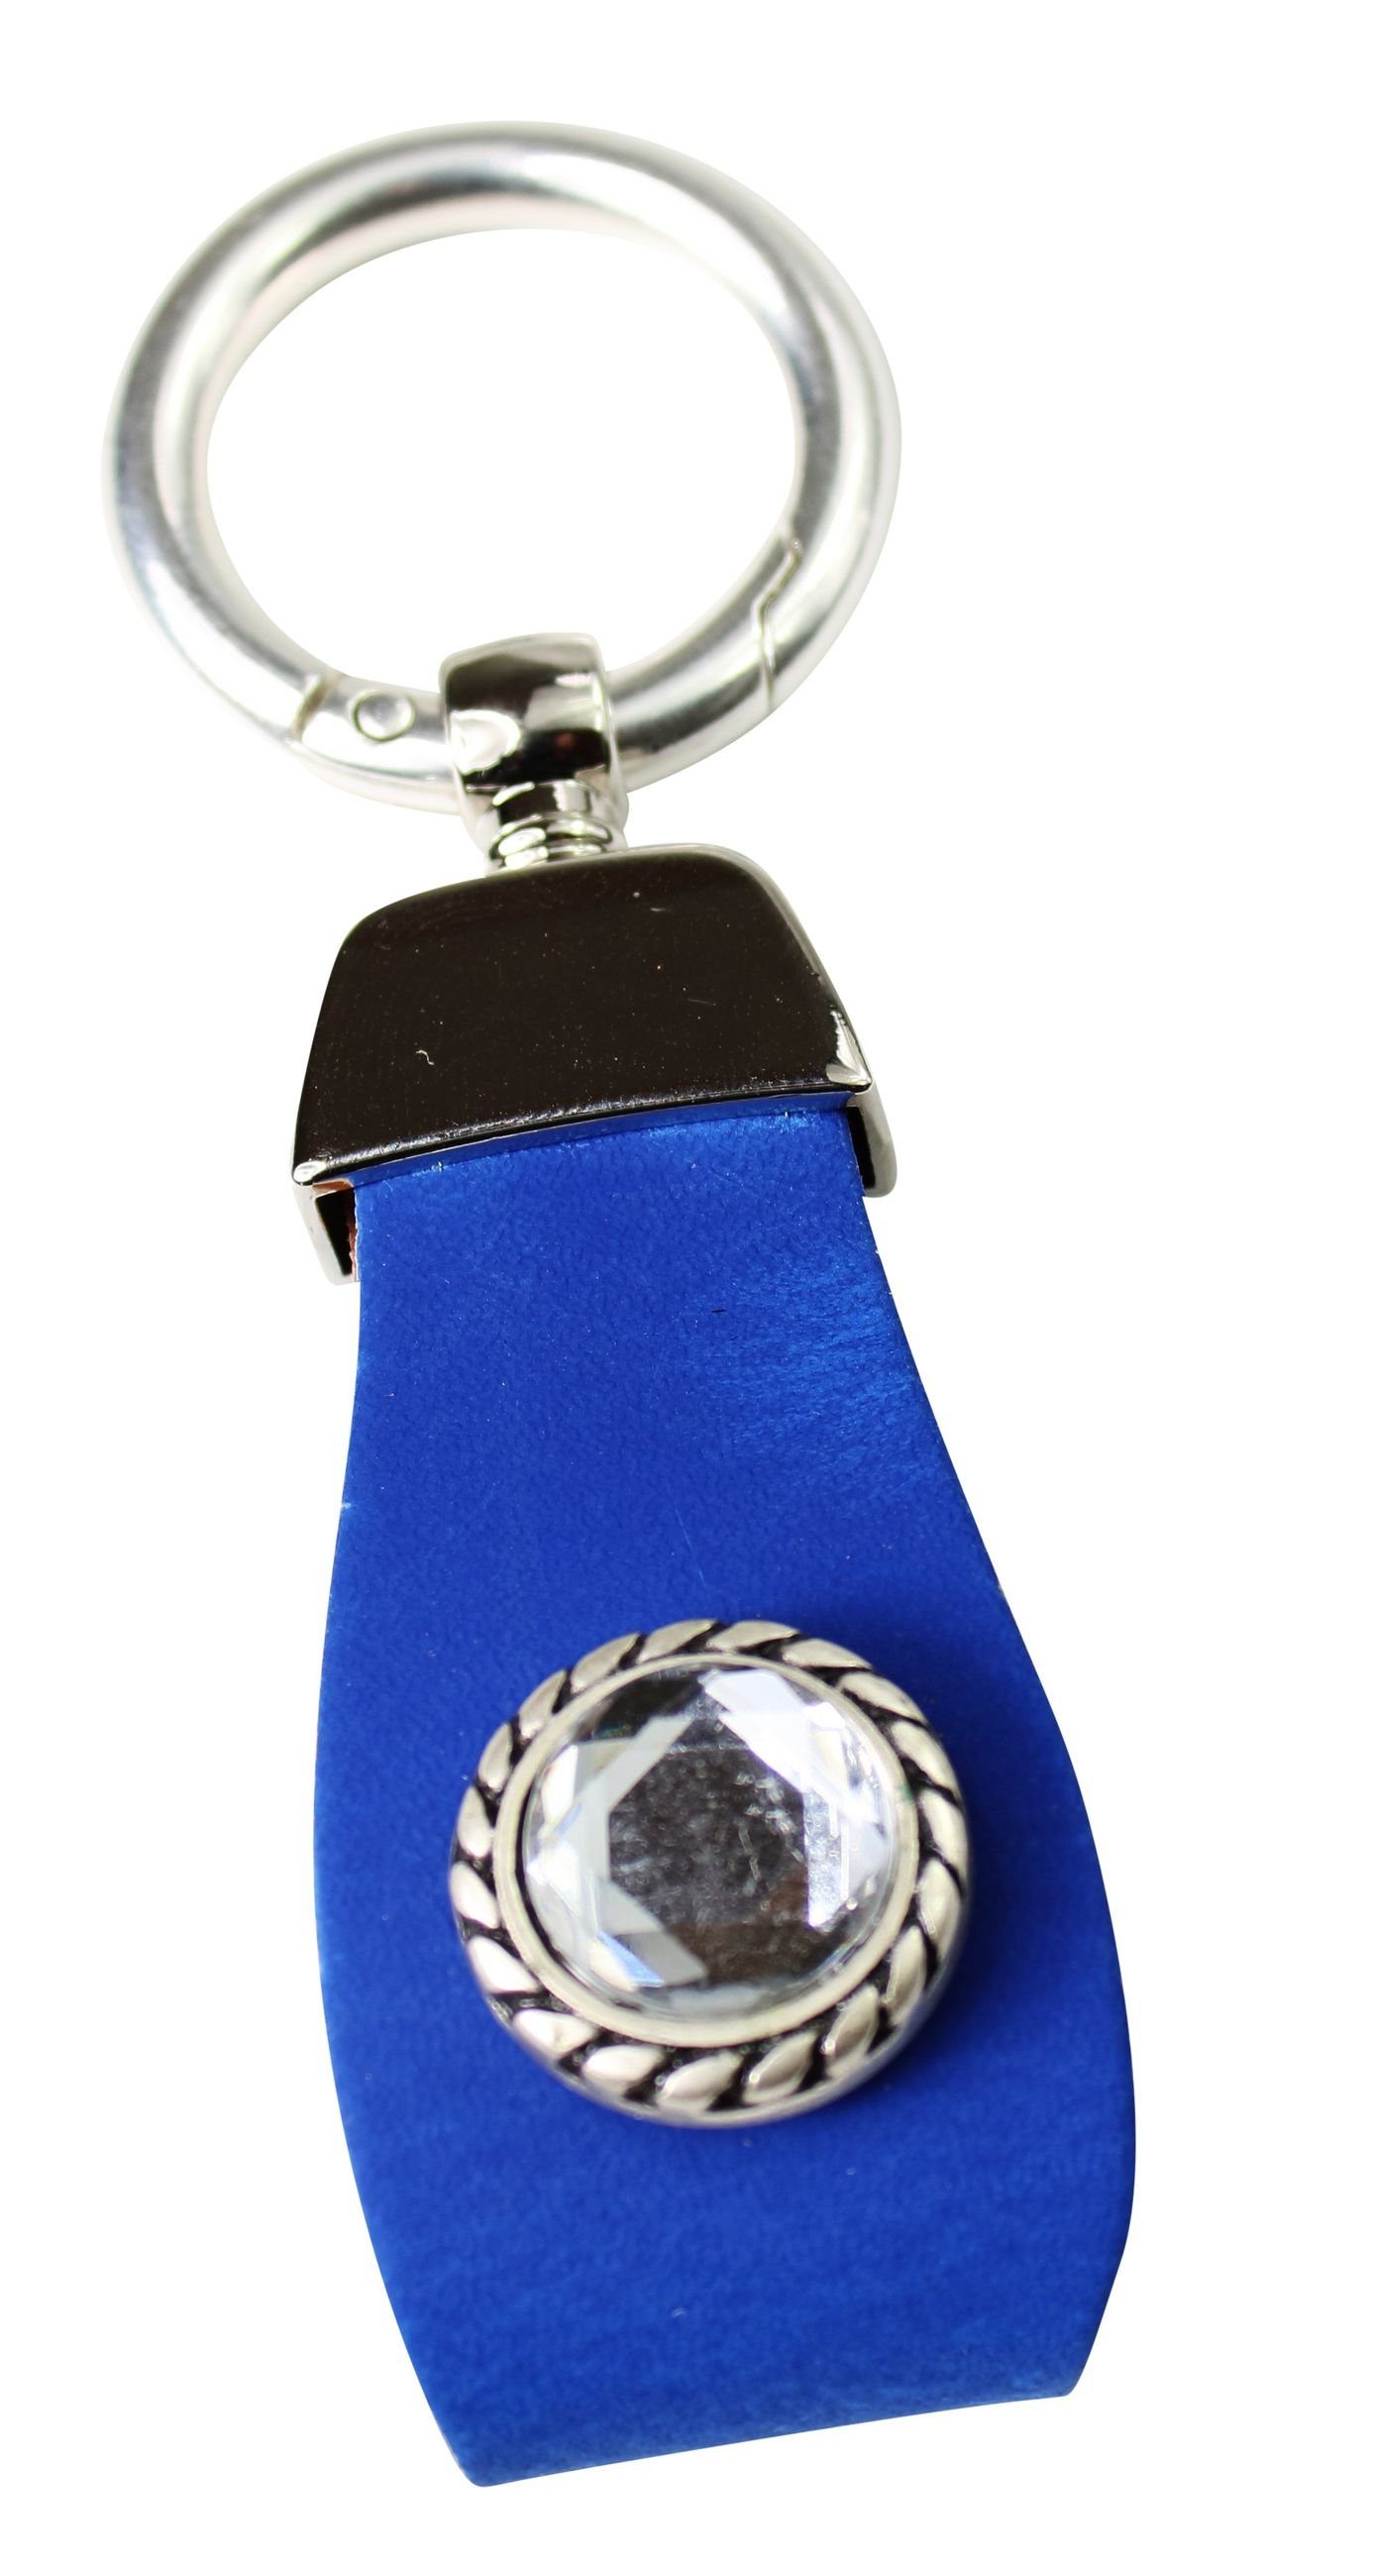 FRONHOFER Schlüsselanhänger 18881, Schlüsselanhänger aus Leder mit Strass Zierteil in tollen Farben Kobalt